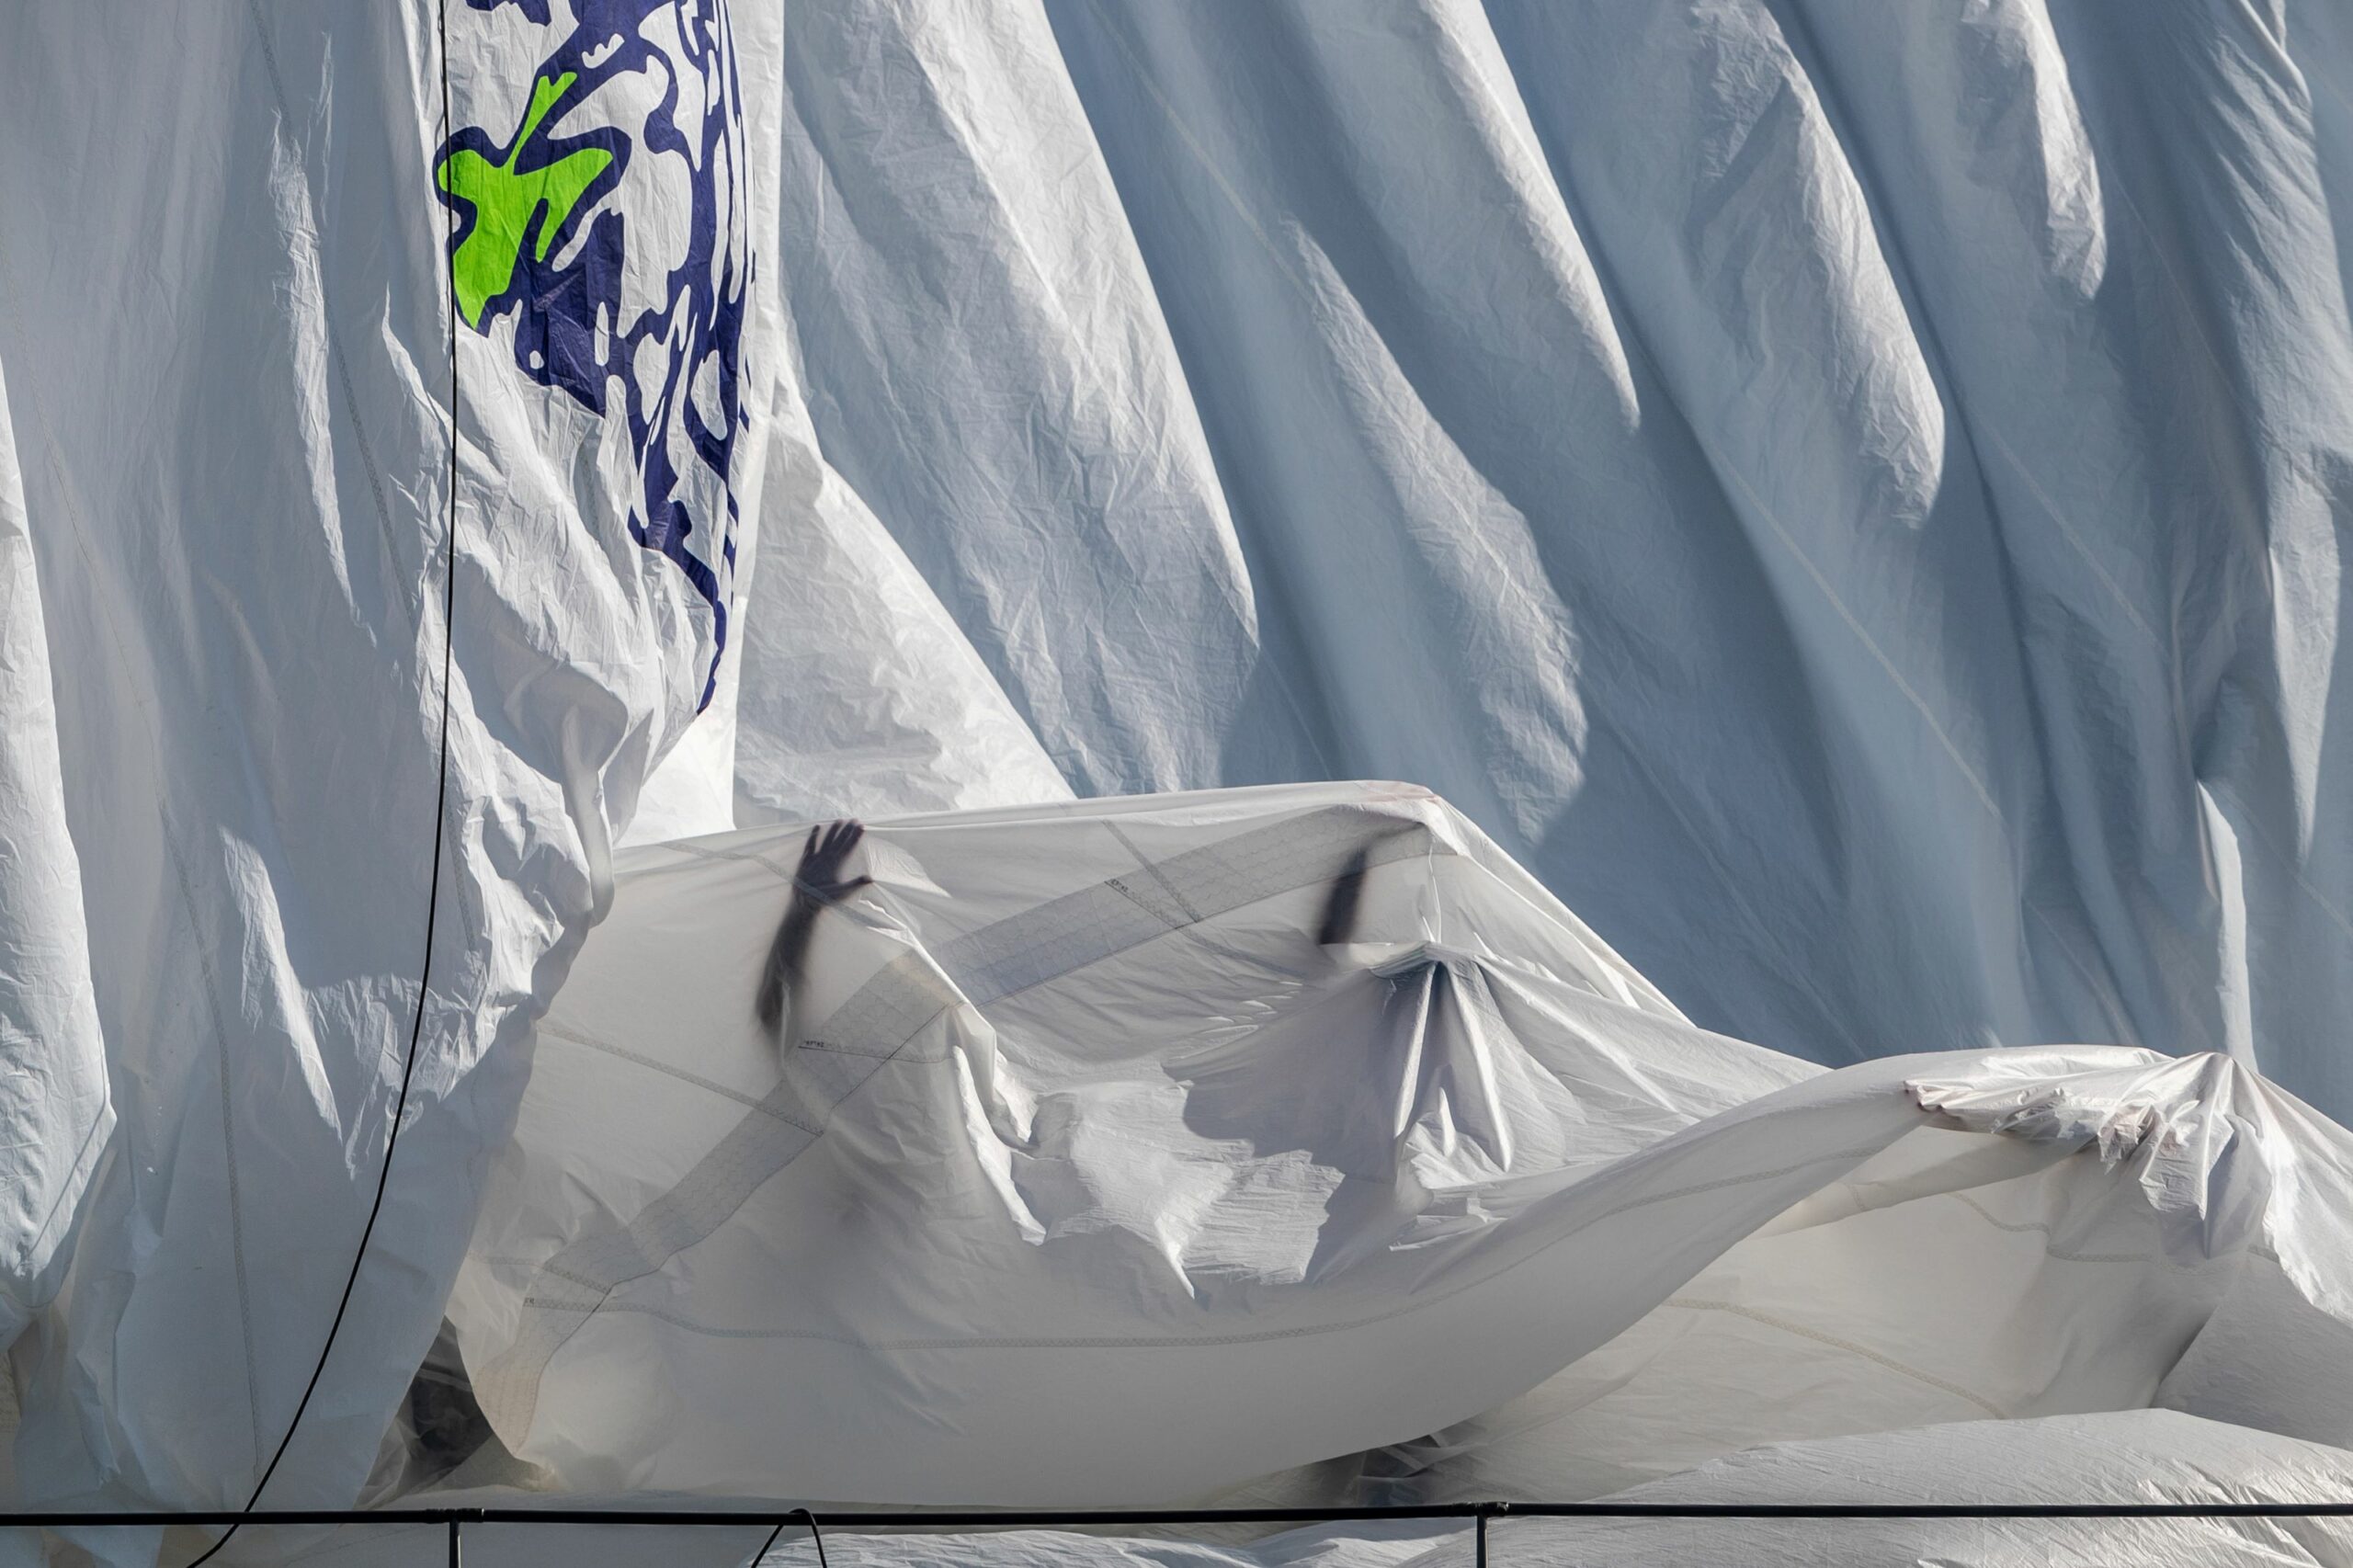 Les Voiles de Saint-Tropez: one of the world’s largest Maxi Yacht meets!